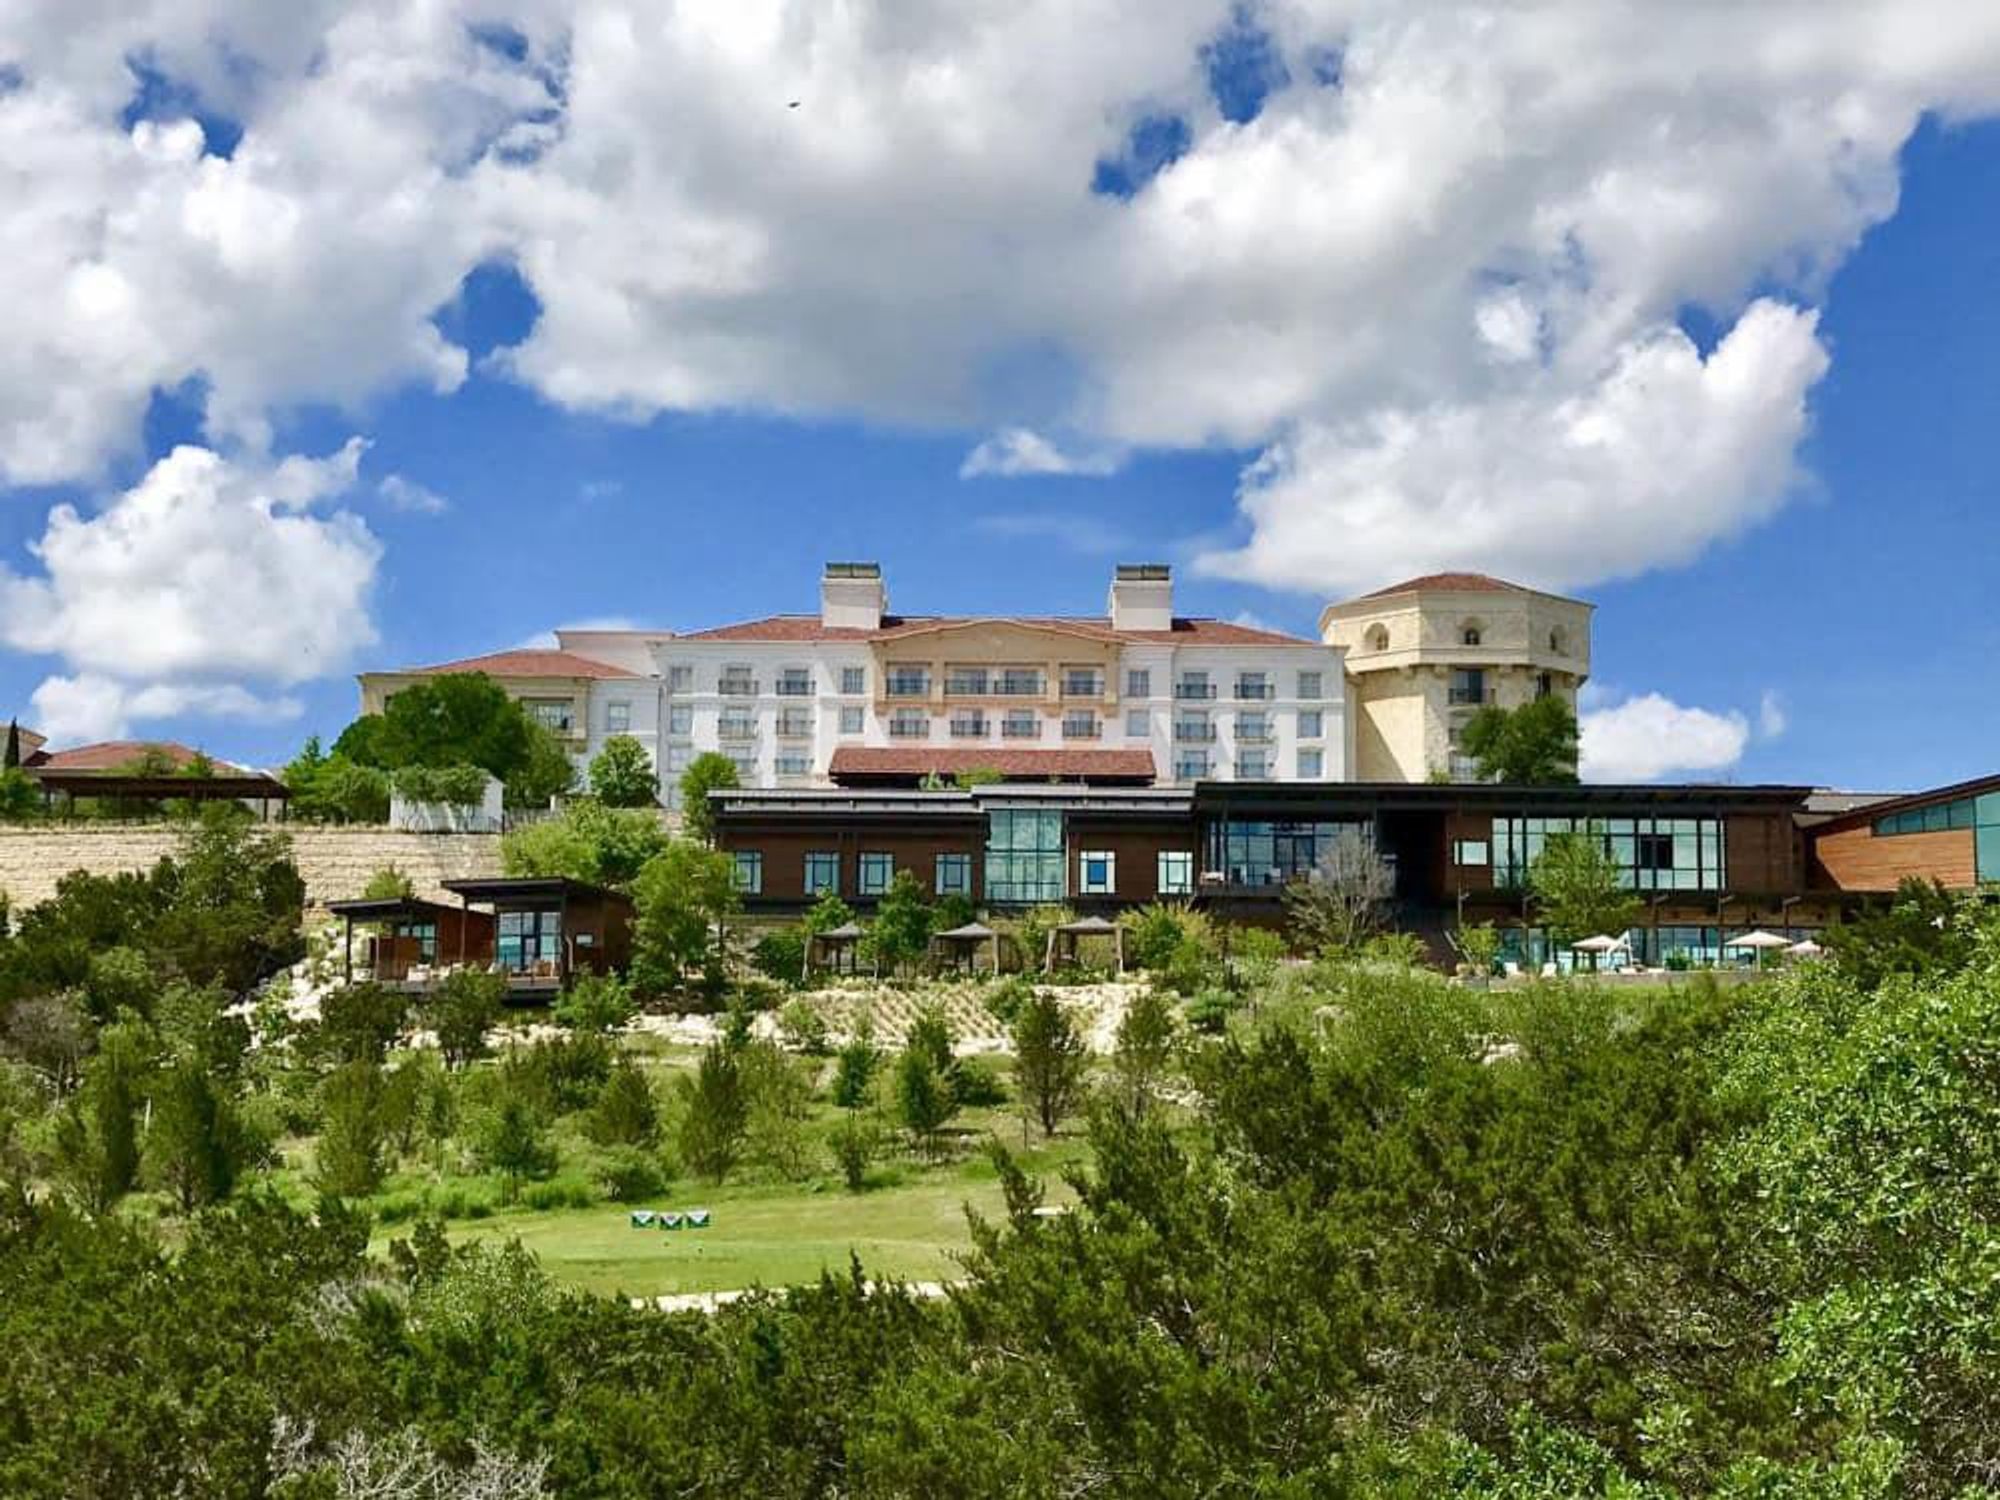 La Cantera Resort and Spa